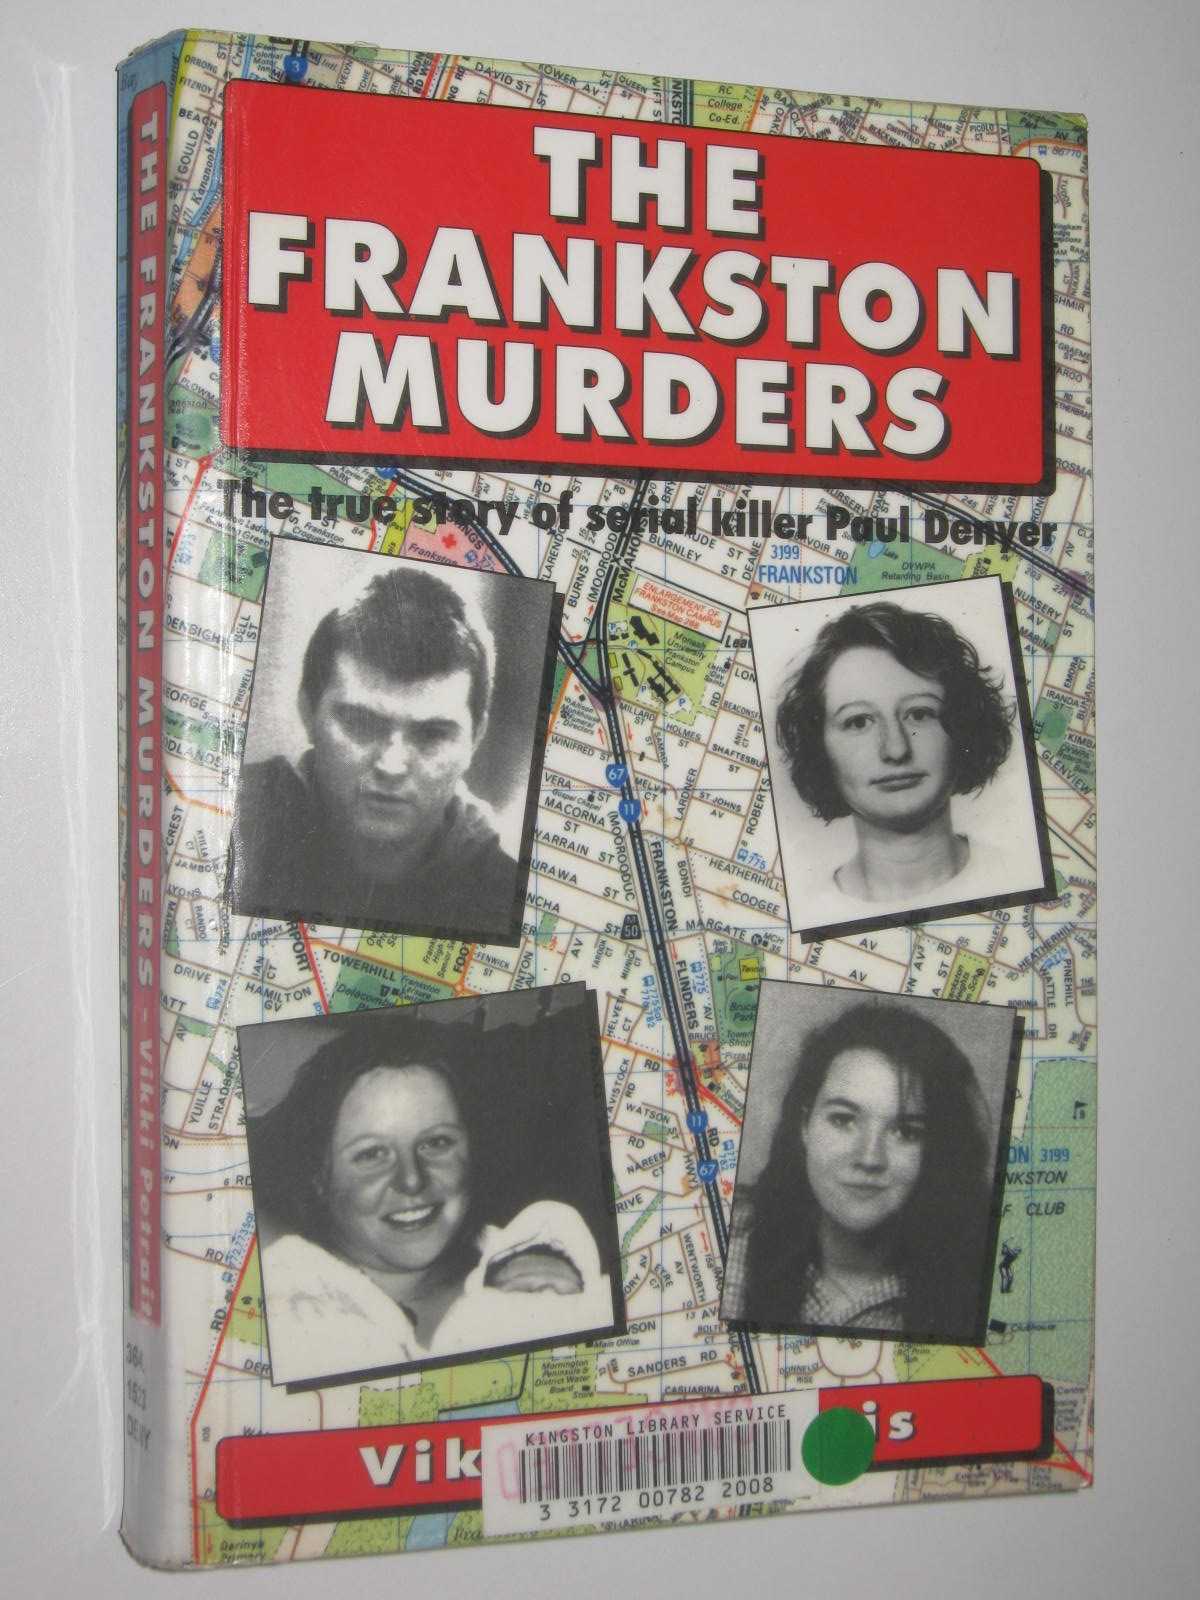 Image for The Frankston Murders : True Story of Serial Killer Paul Denyer